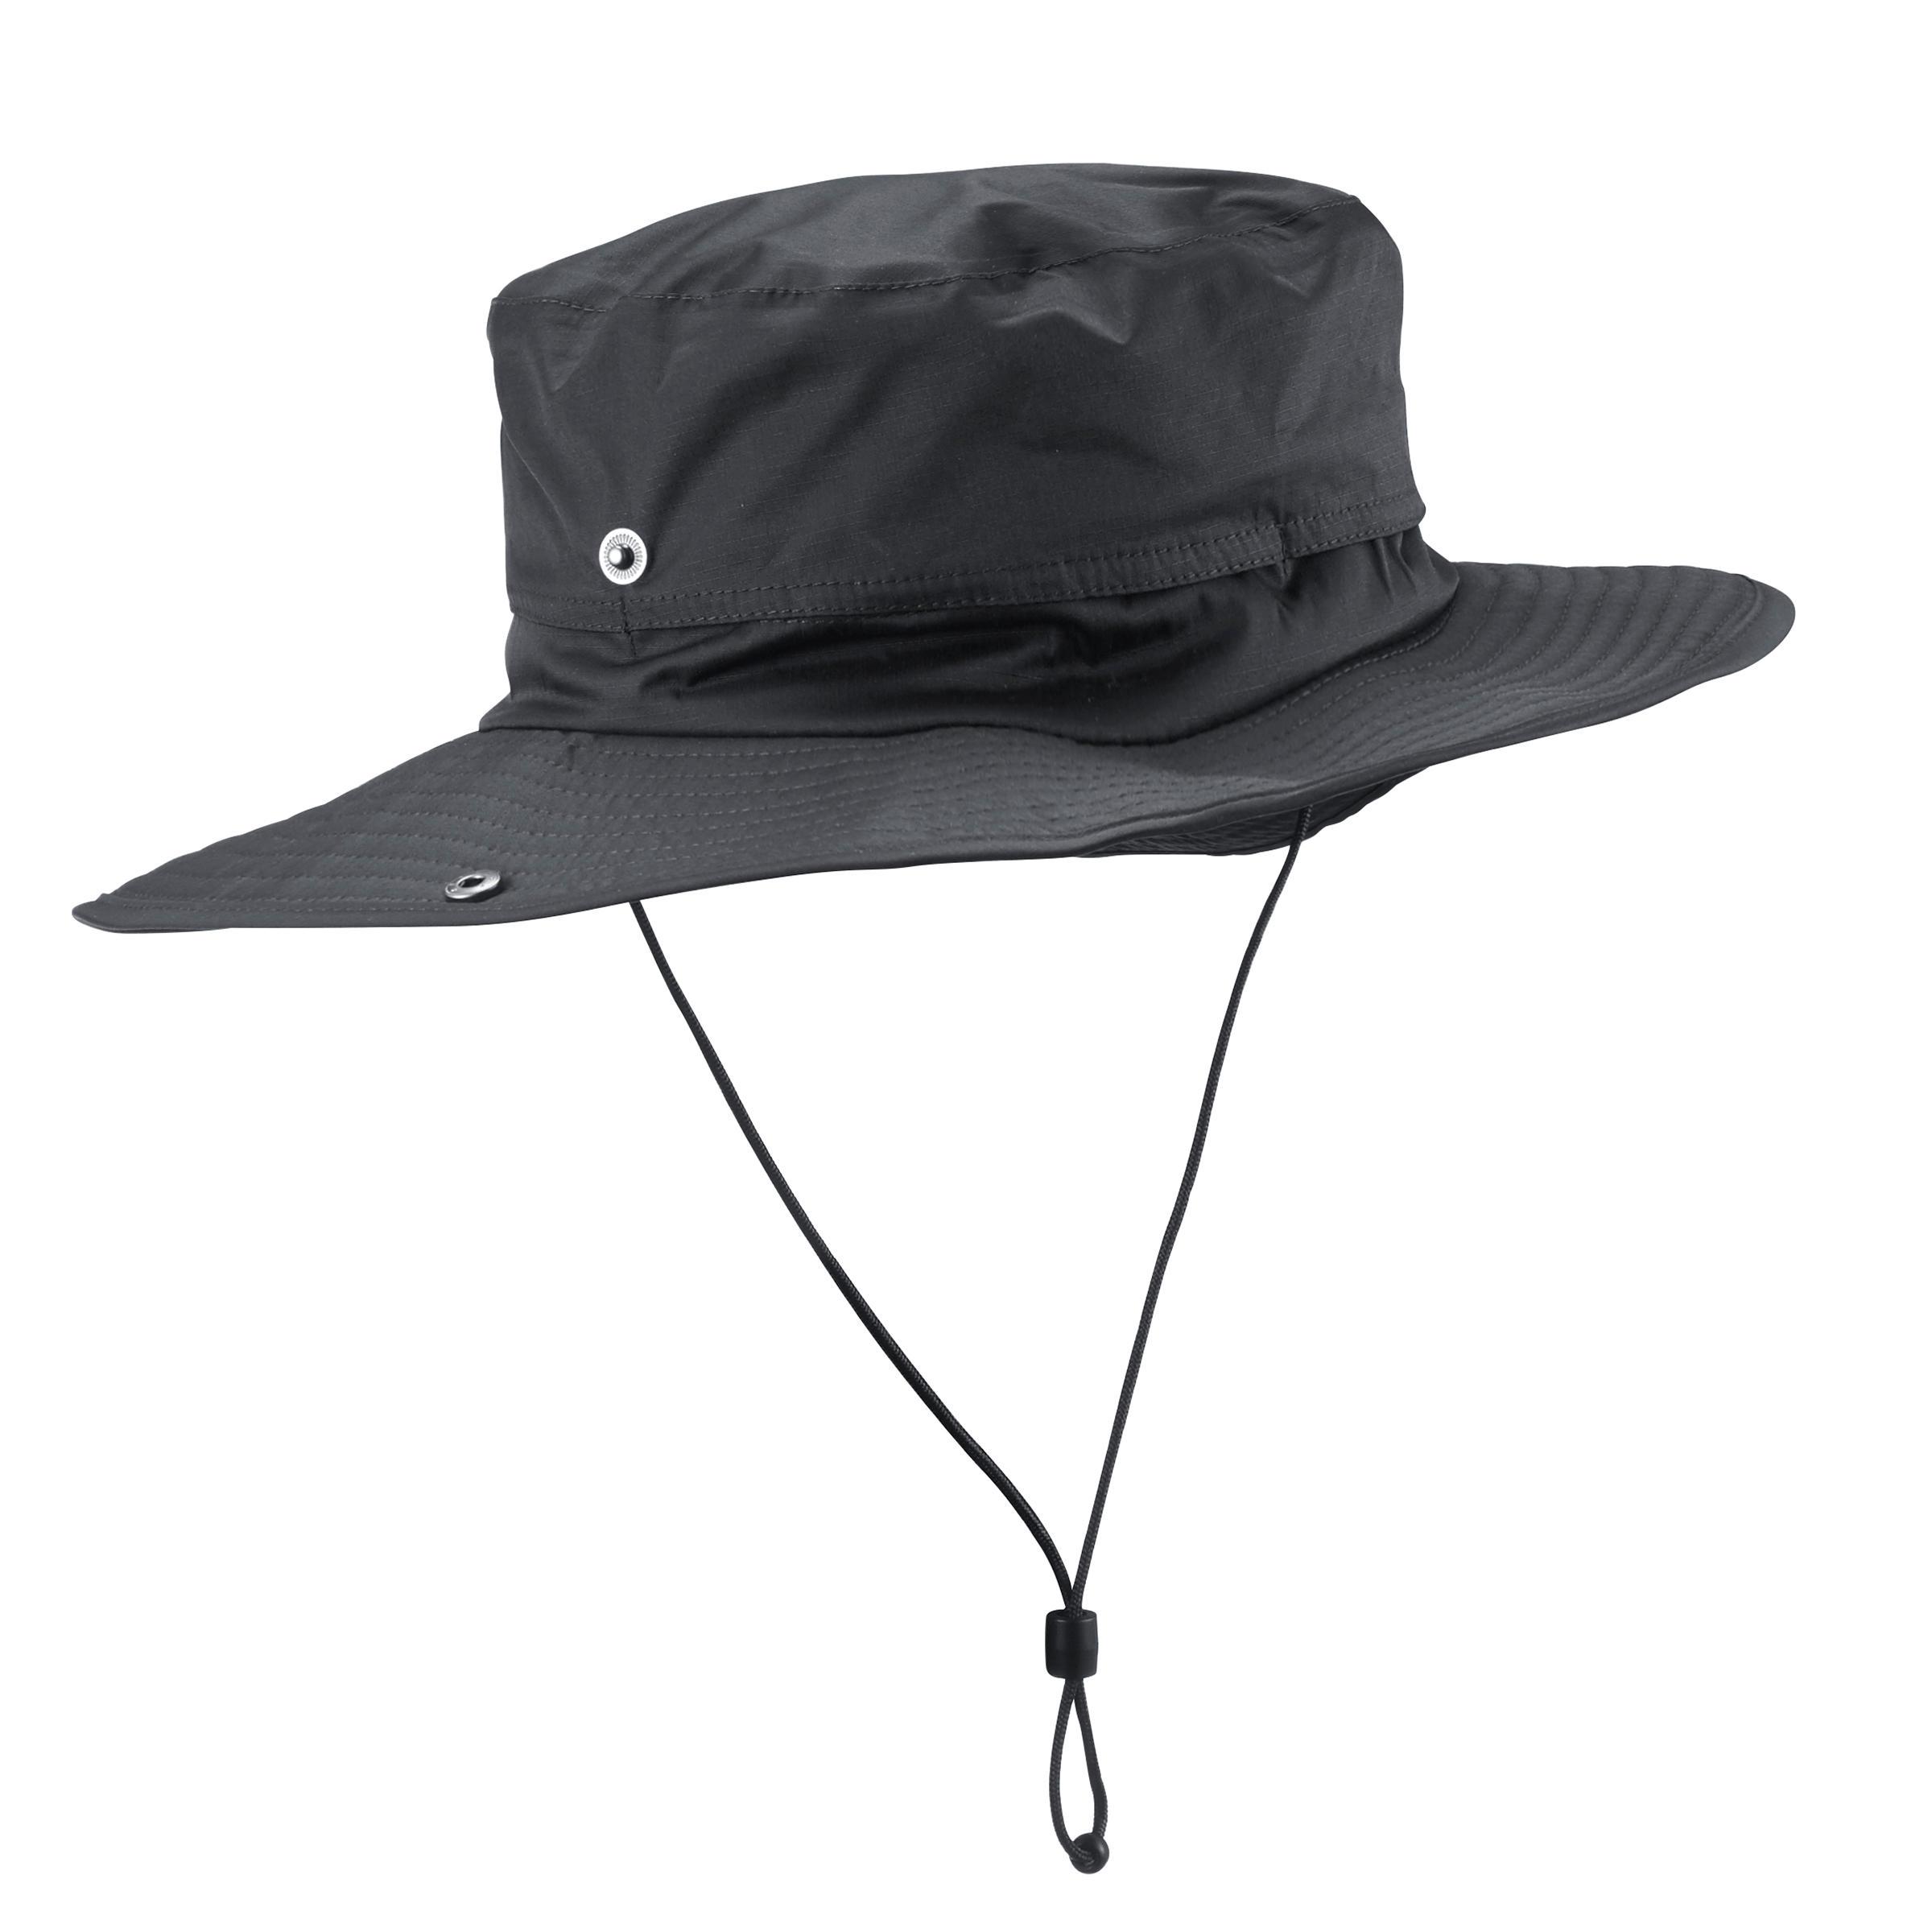 [ด่วน!! โปรโมชั่นมีจำนวนจำกัด] หมวกสำหรับการเทรคกิ้งบนภูเขากันน้ำรุ่น TREK 900 (สีเทาเข้ม) สำหรับ เดินเขาแทรคกิ้งหลายวัน เดินป่า